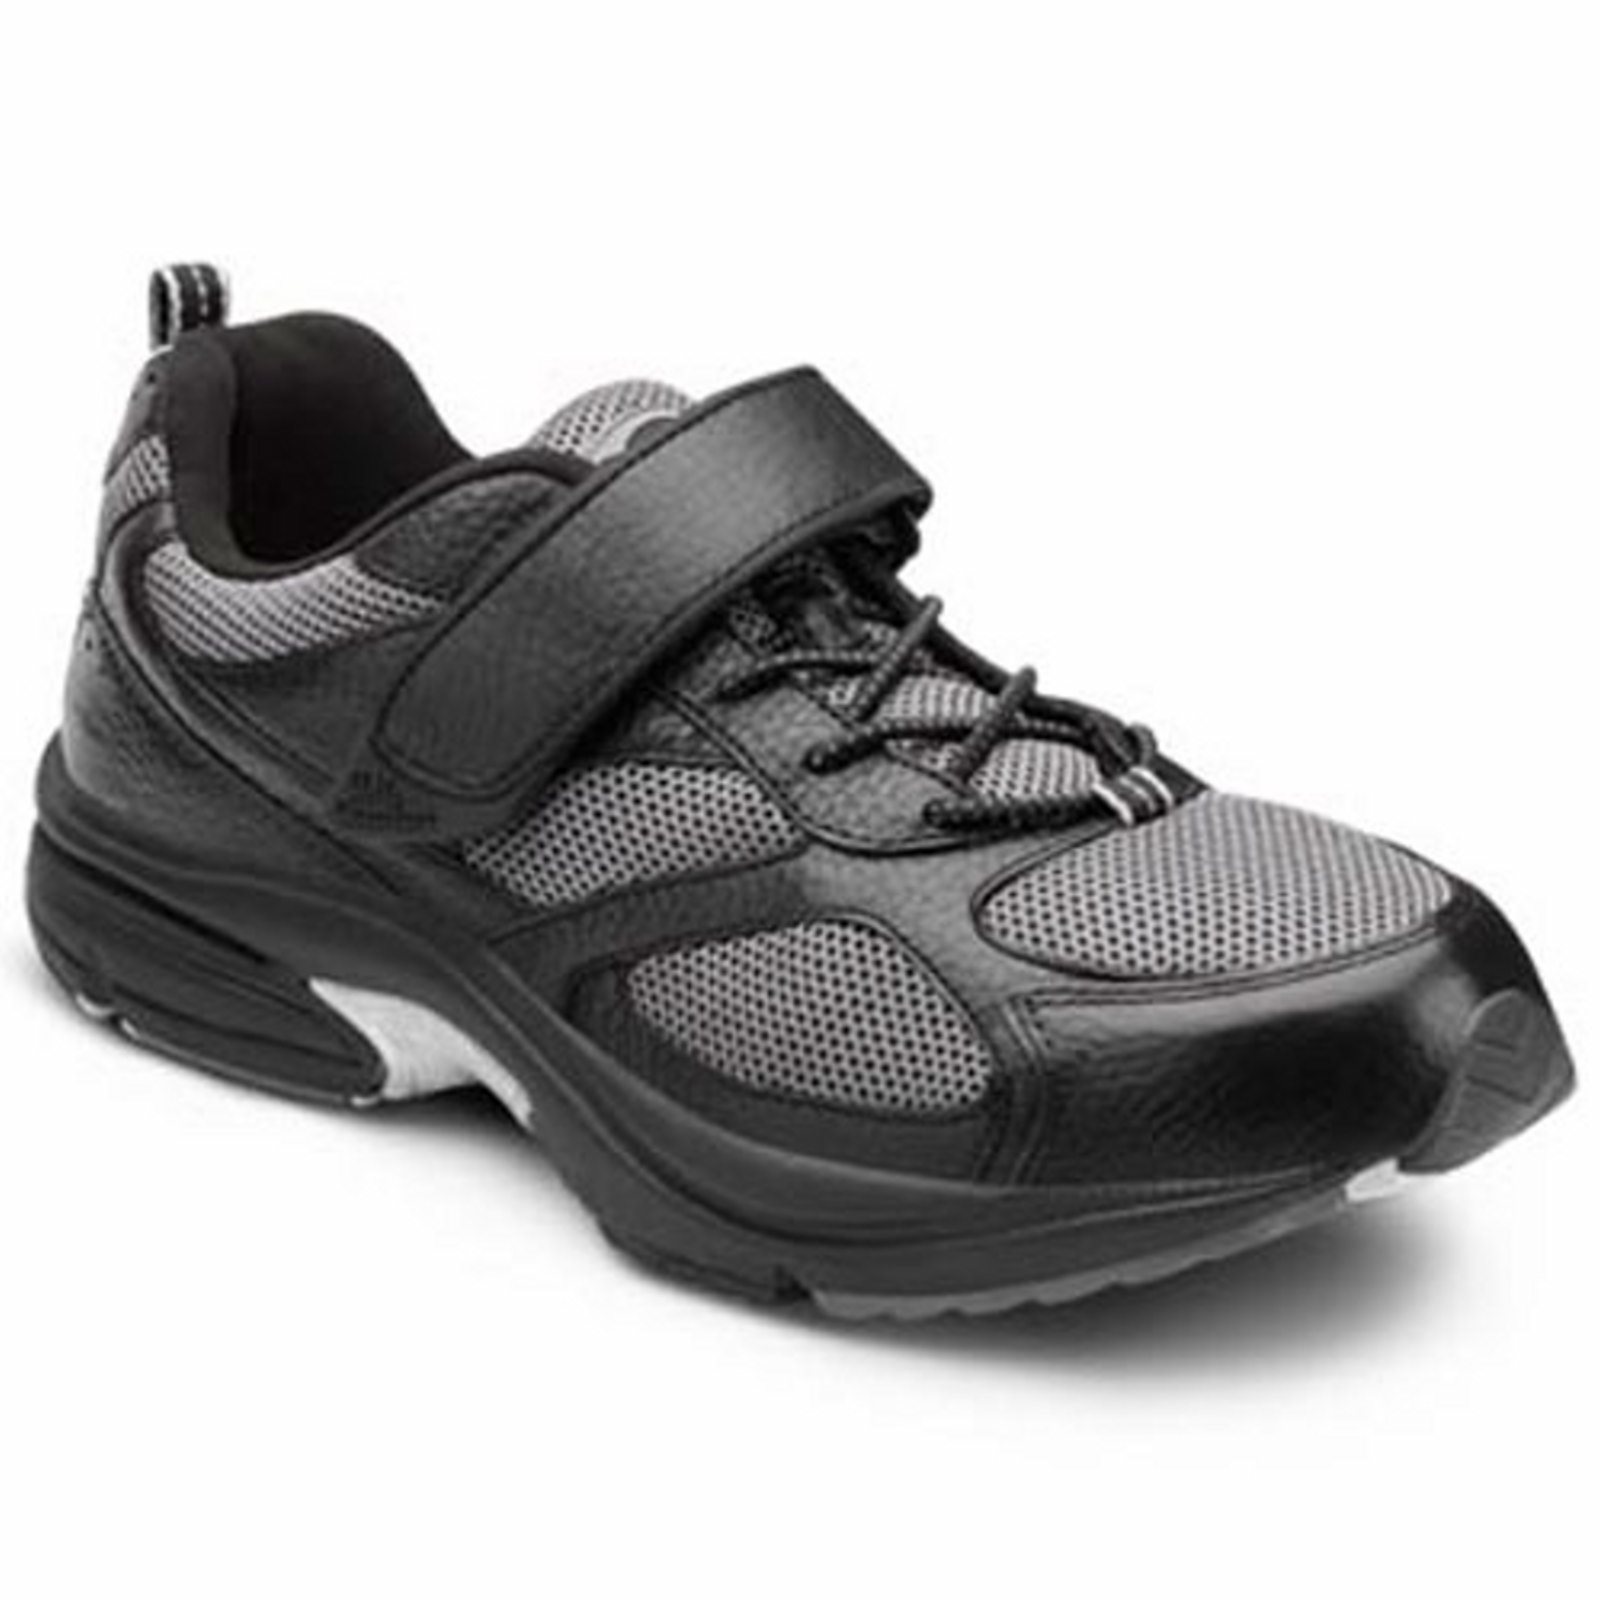 Dr. Comfort Endurance Men's Athletic Shoe: 12 Wide (E/2E) Black Elastic Lace w/Strap - image 1 of 5